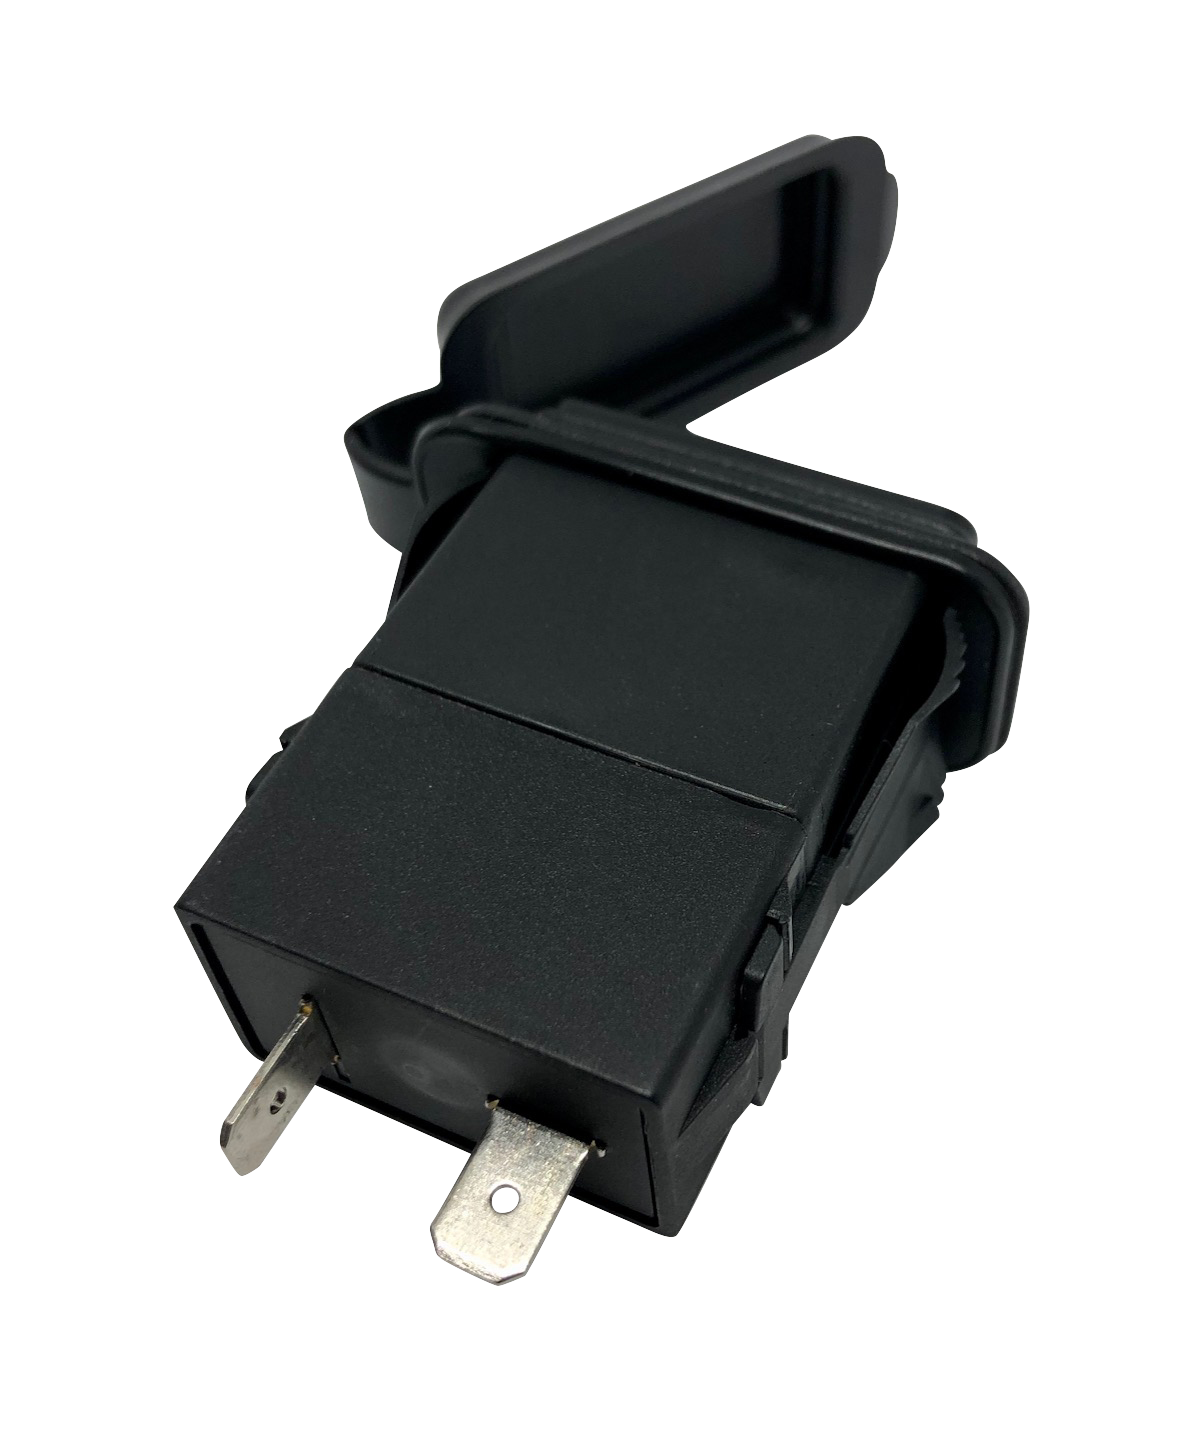 Chargeur USB rectangulaire A13-208 arrière